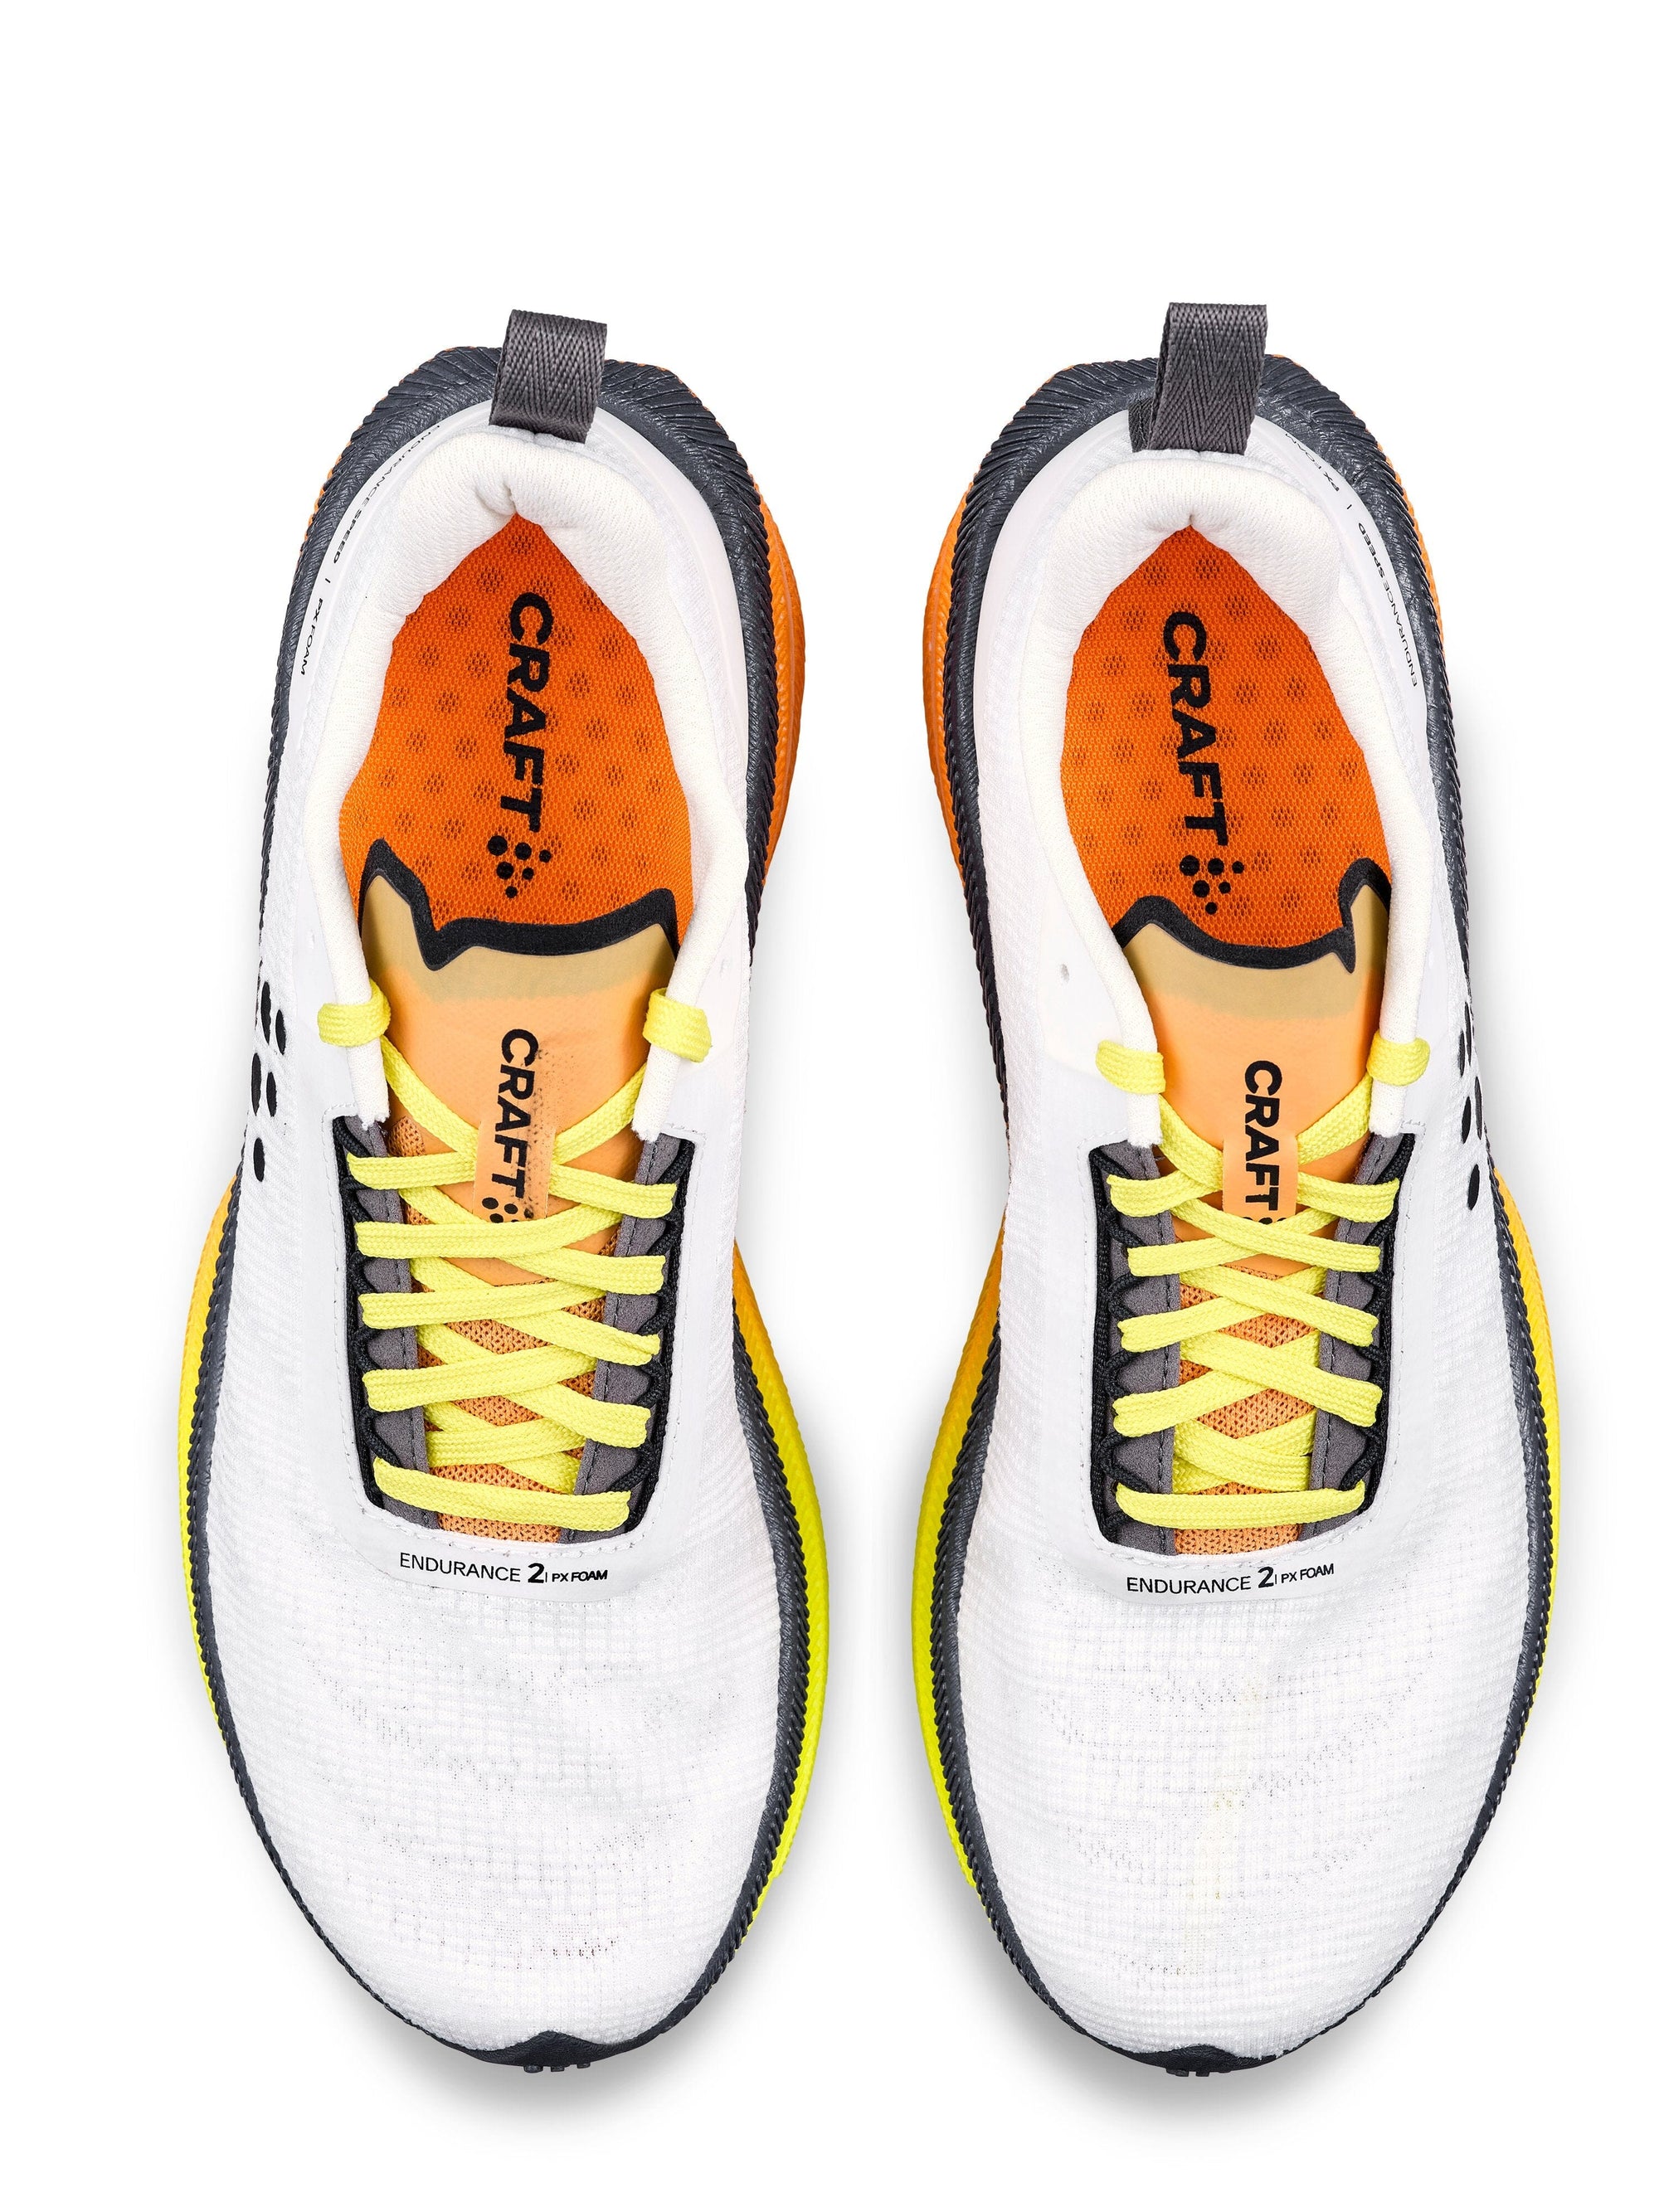 CRAFT Endurance 2 Men's Road Running Shoes White UK 7.5 EU 41.5 